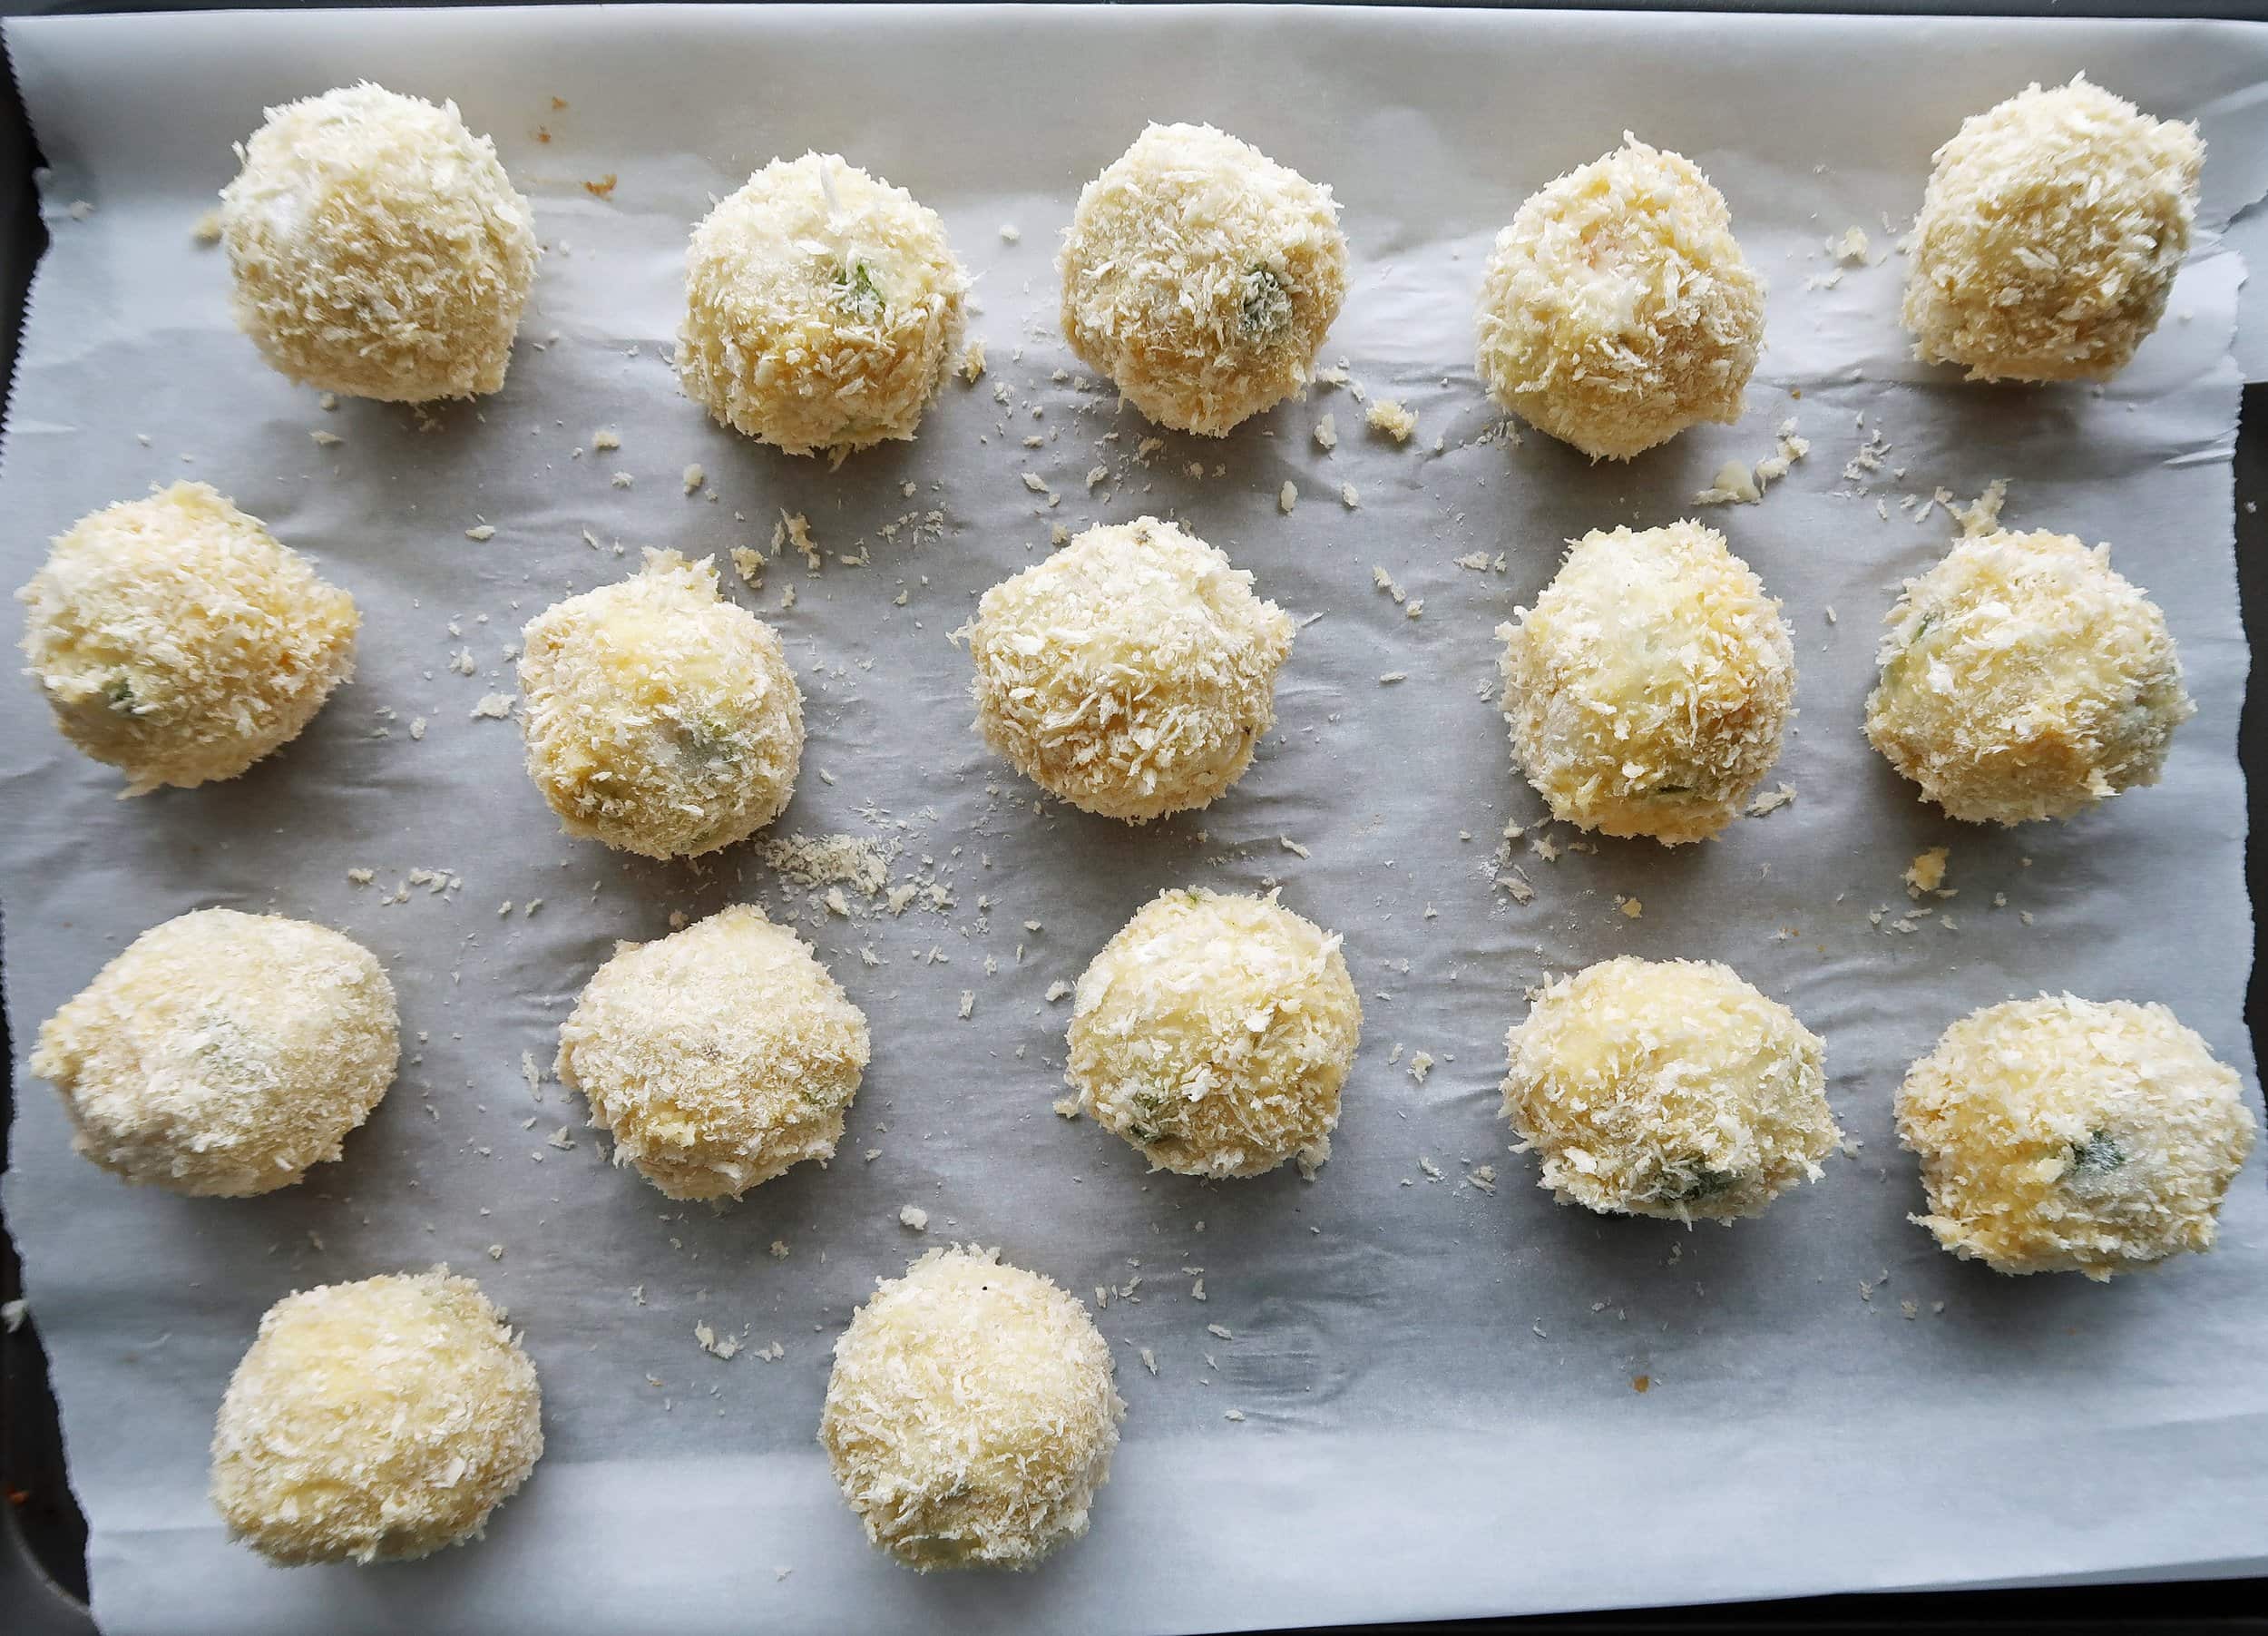 Mashed potato balls coated with panko.